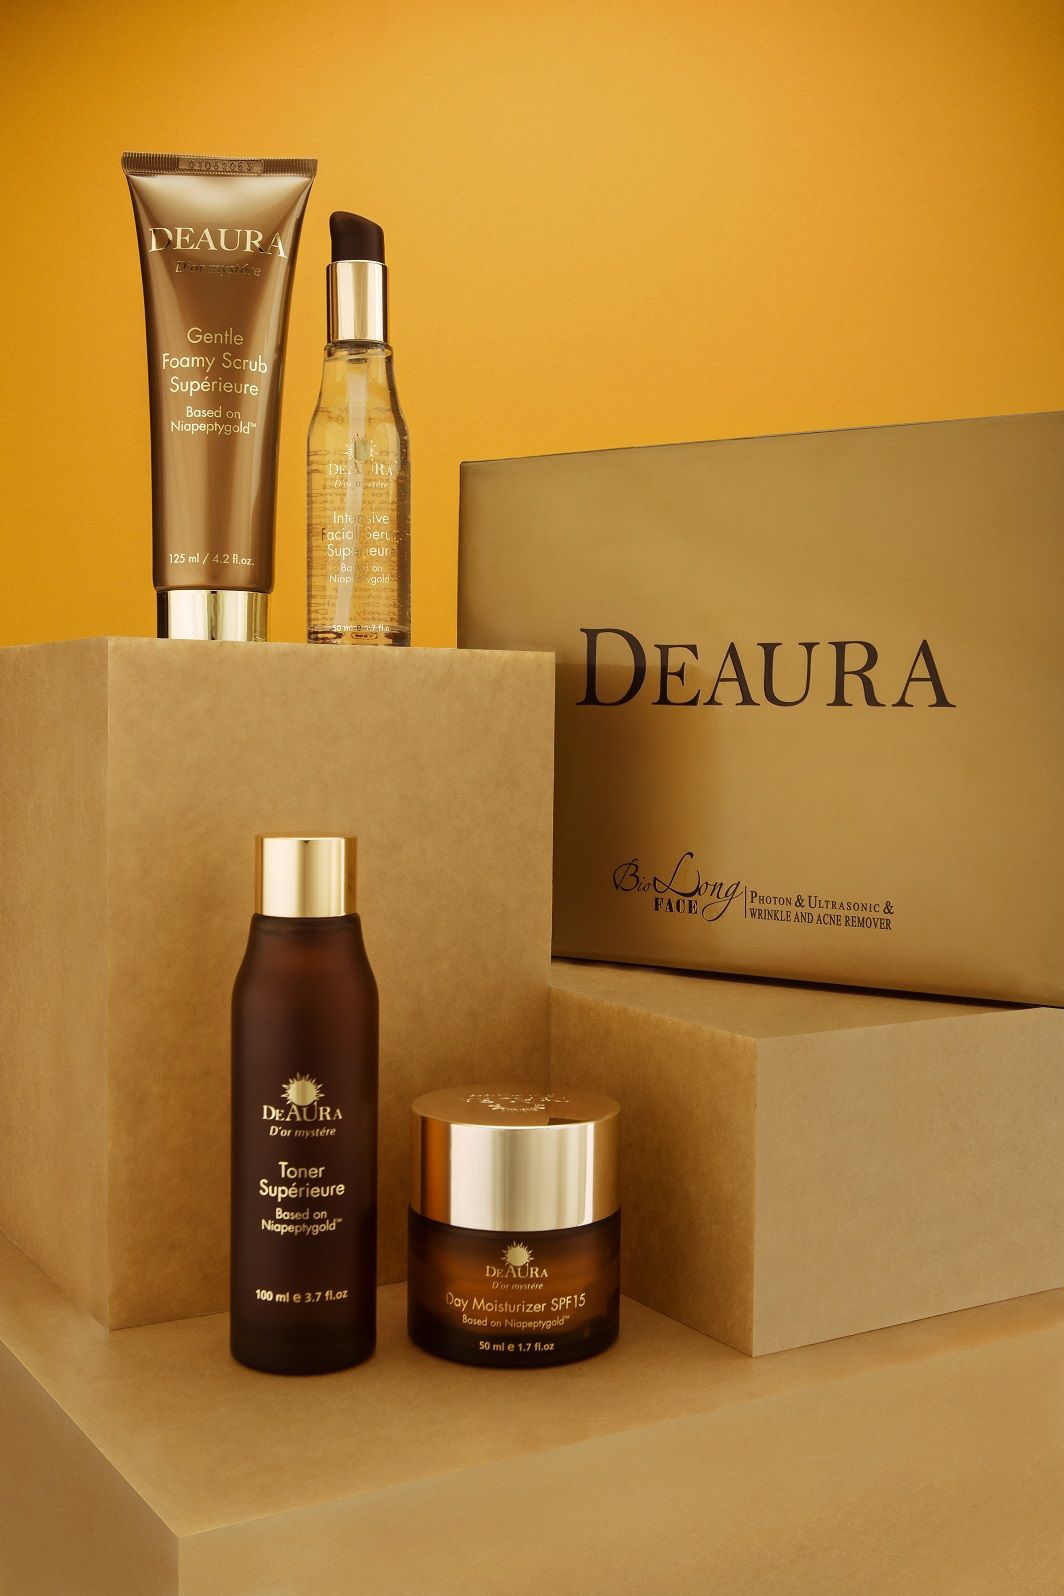 Deaura nổi bật với thành phần vàng nguyên chất 24karat giúp chống lão hóa, kích hoạt chế độ tự phục hồi cho làn da